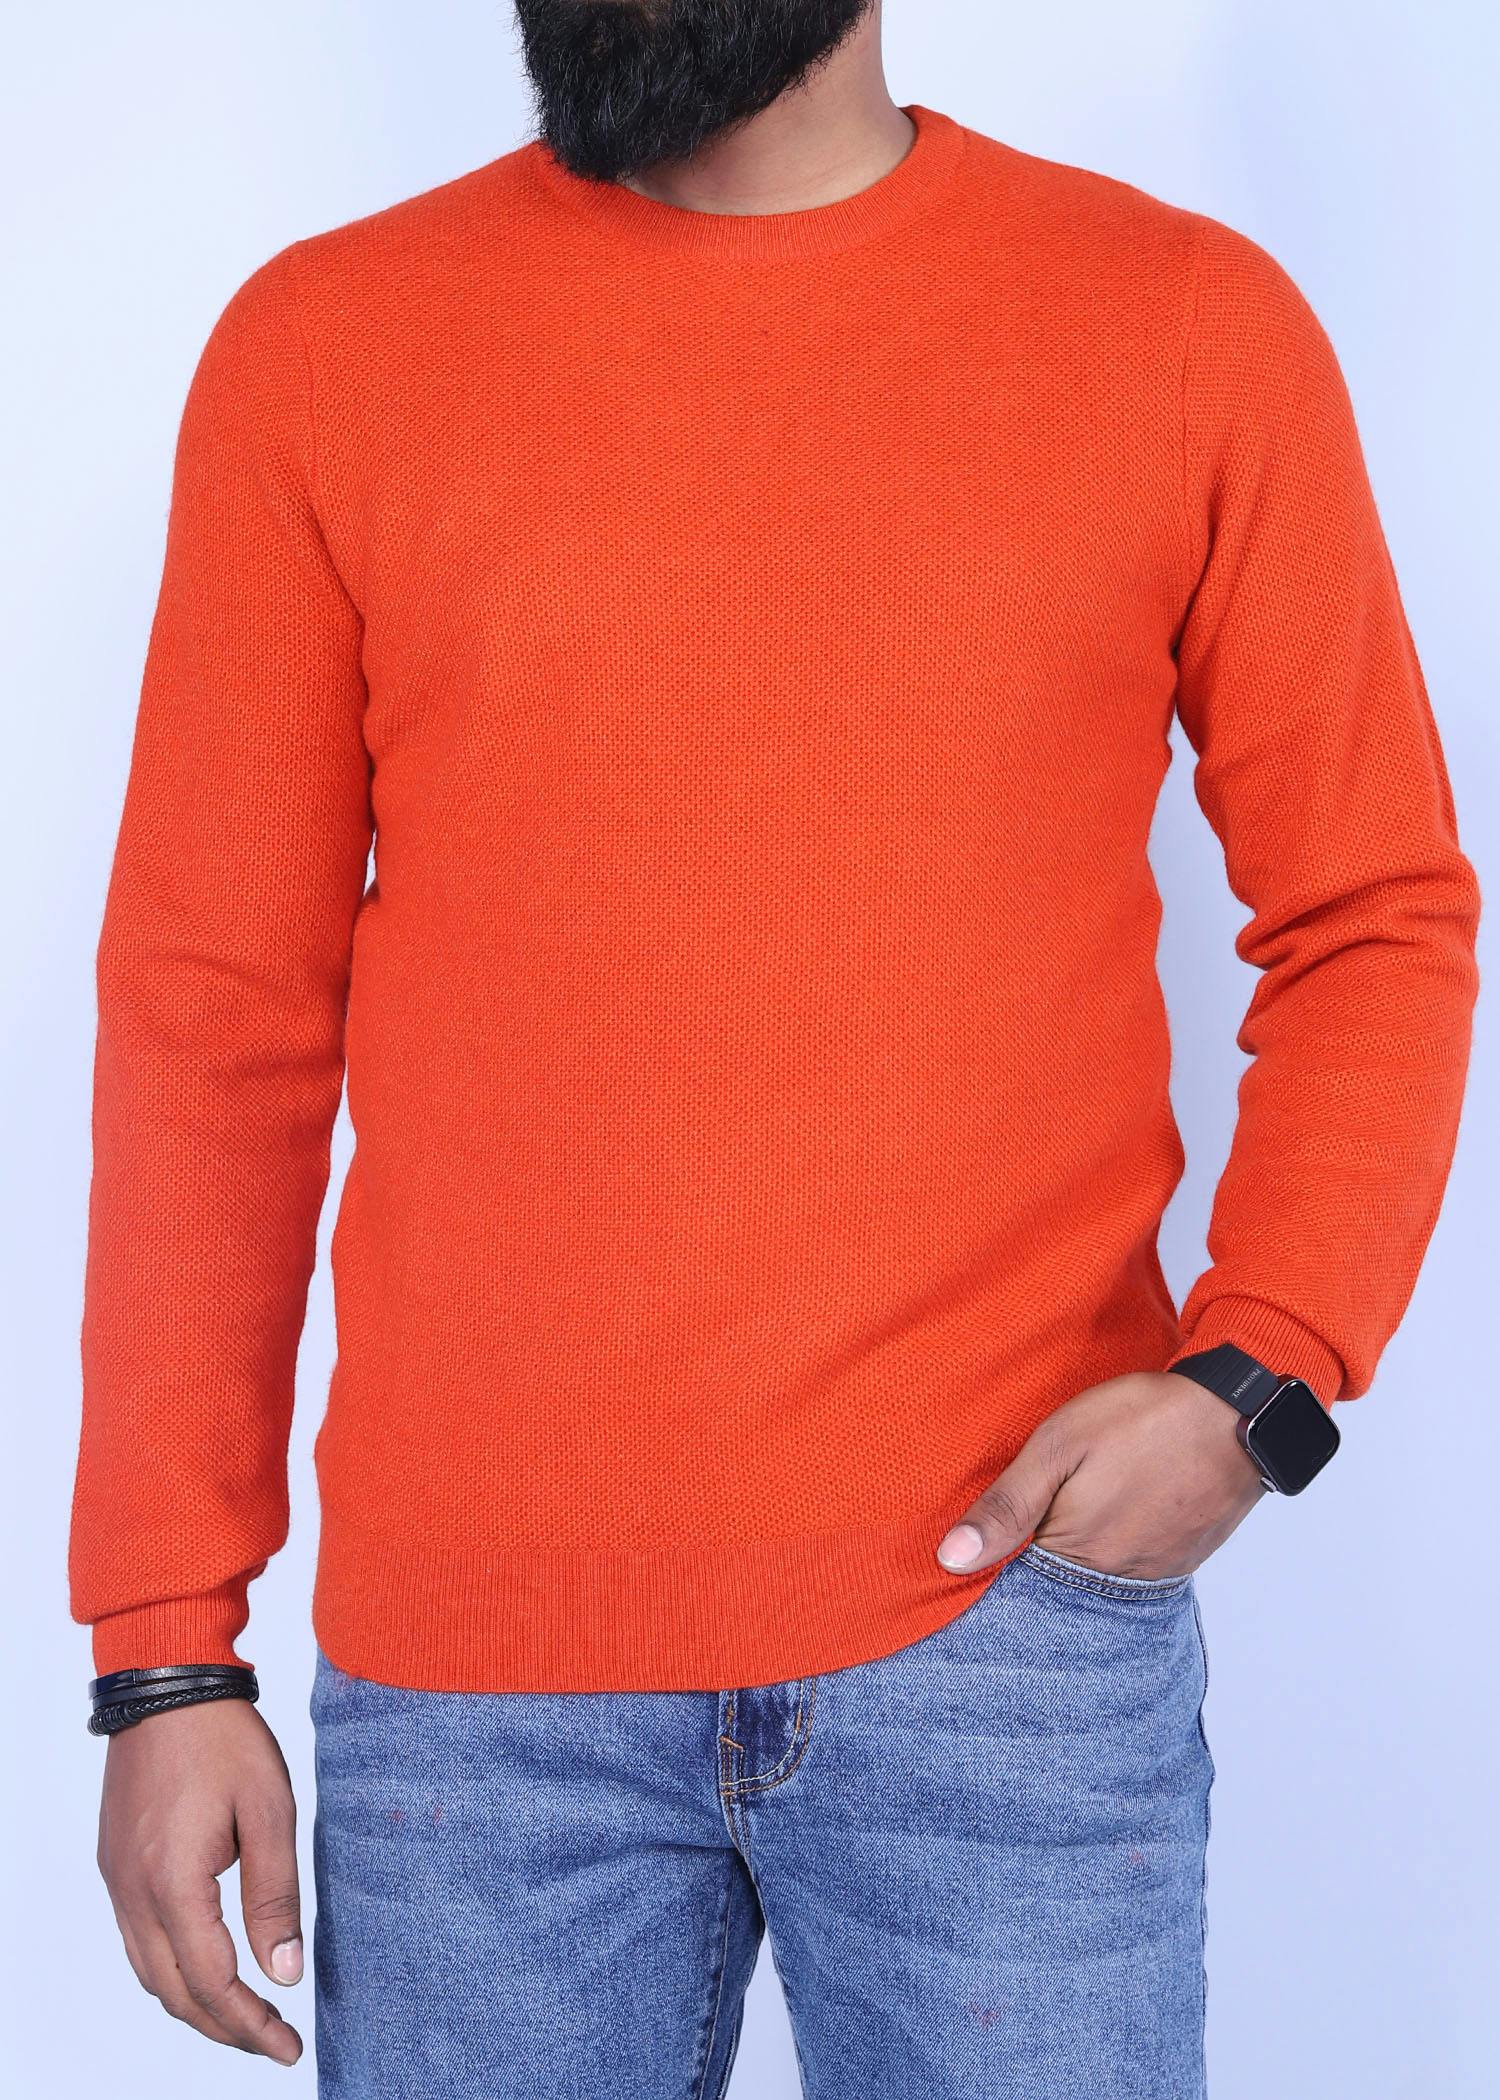 hillstar v sweater orange color half front view